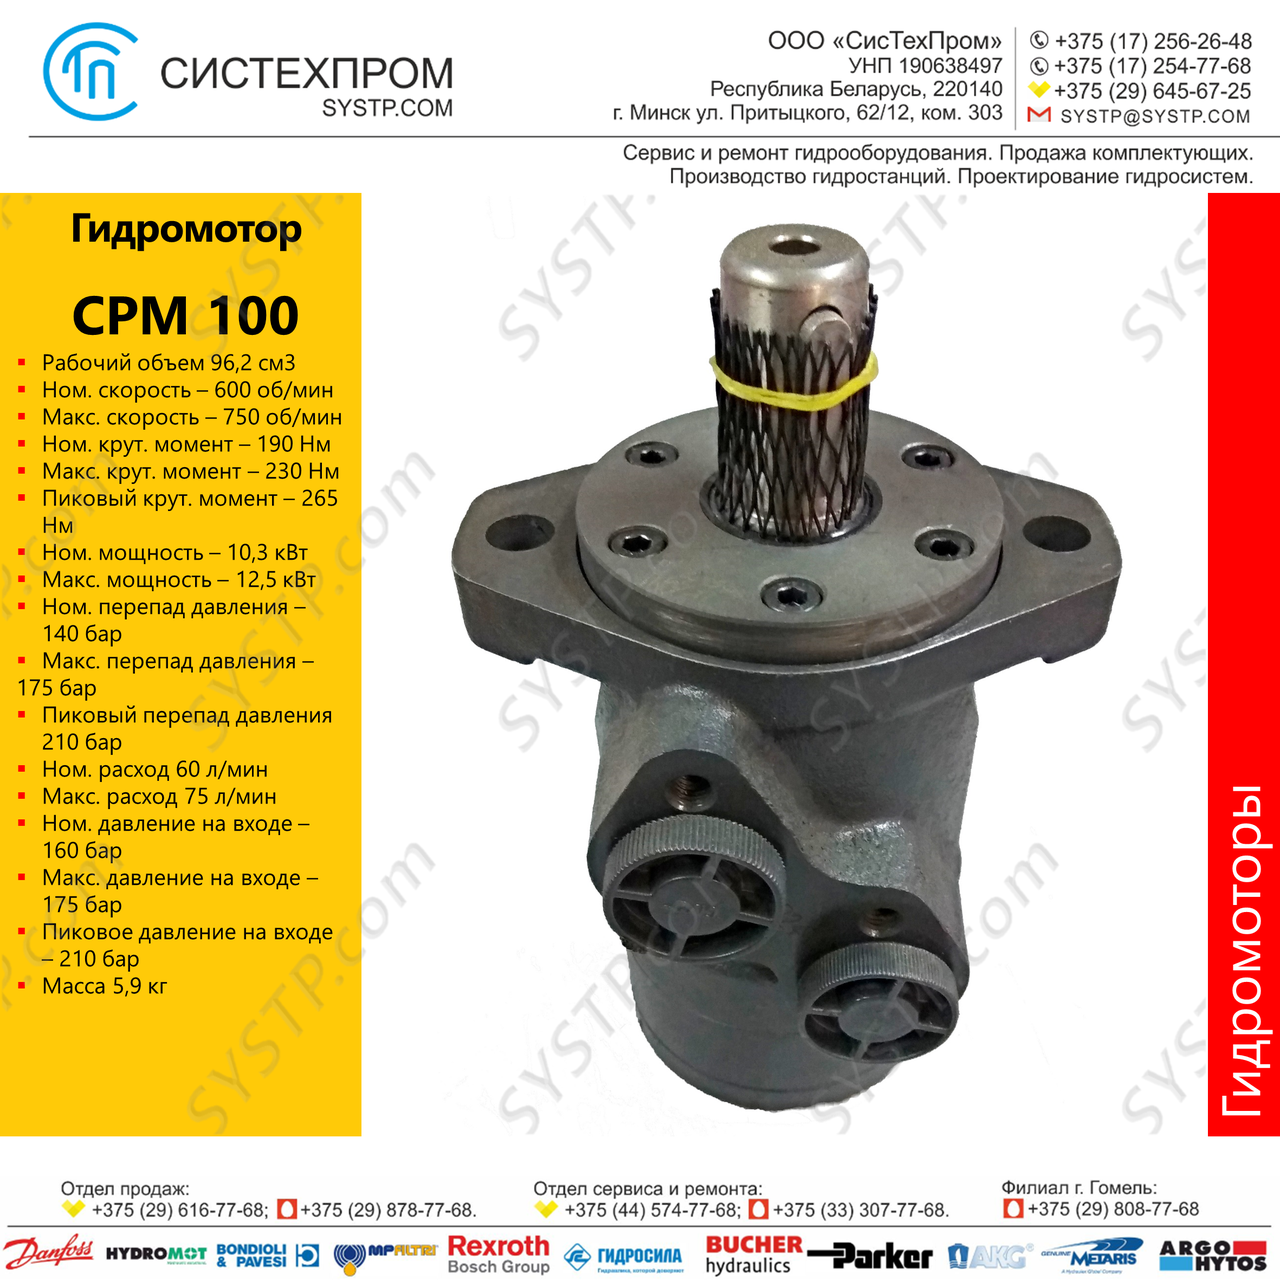 Гидромотор CPM 100